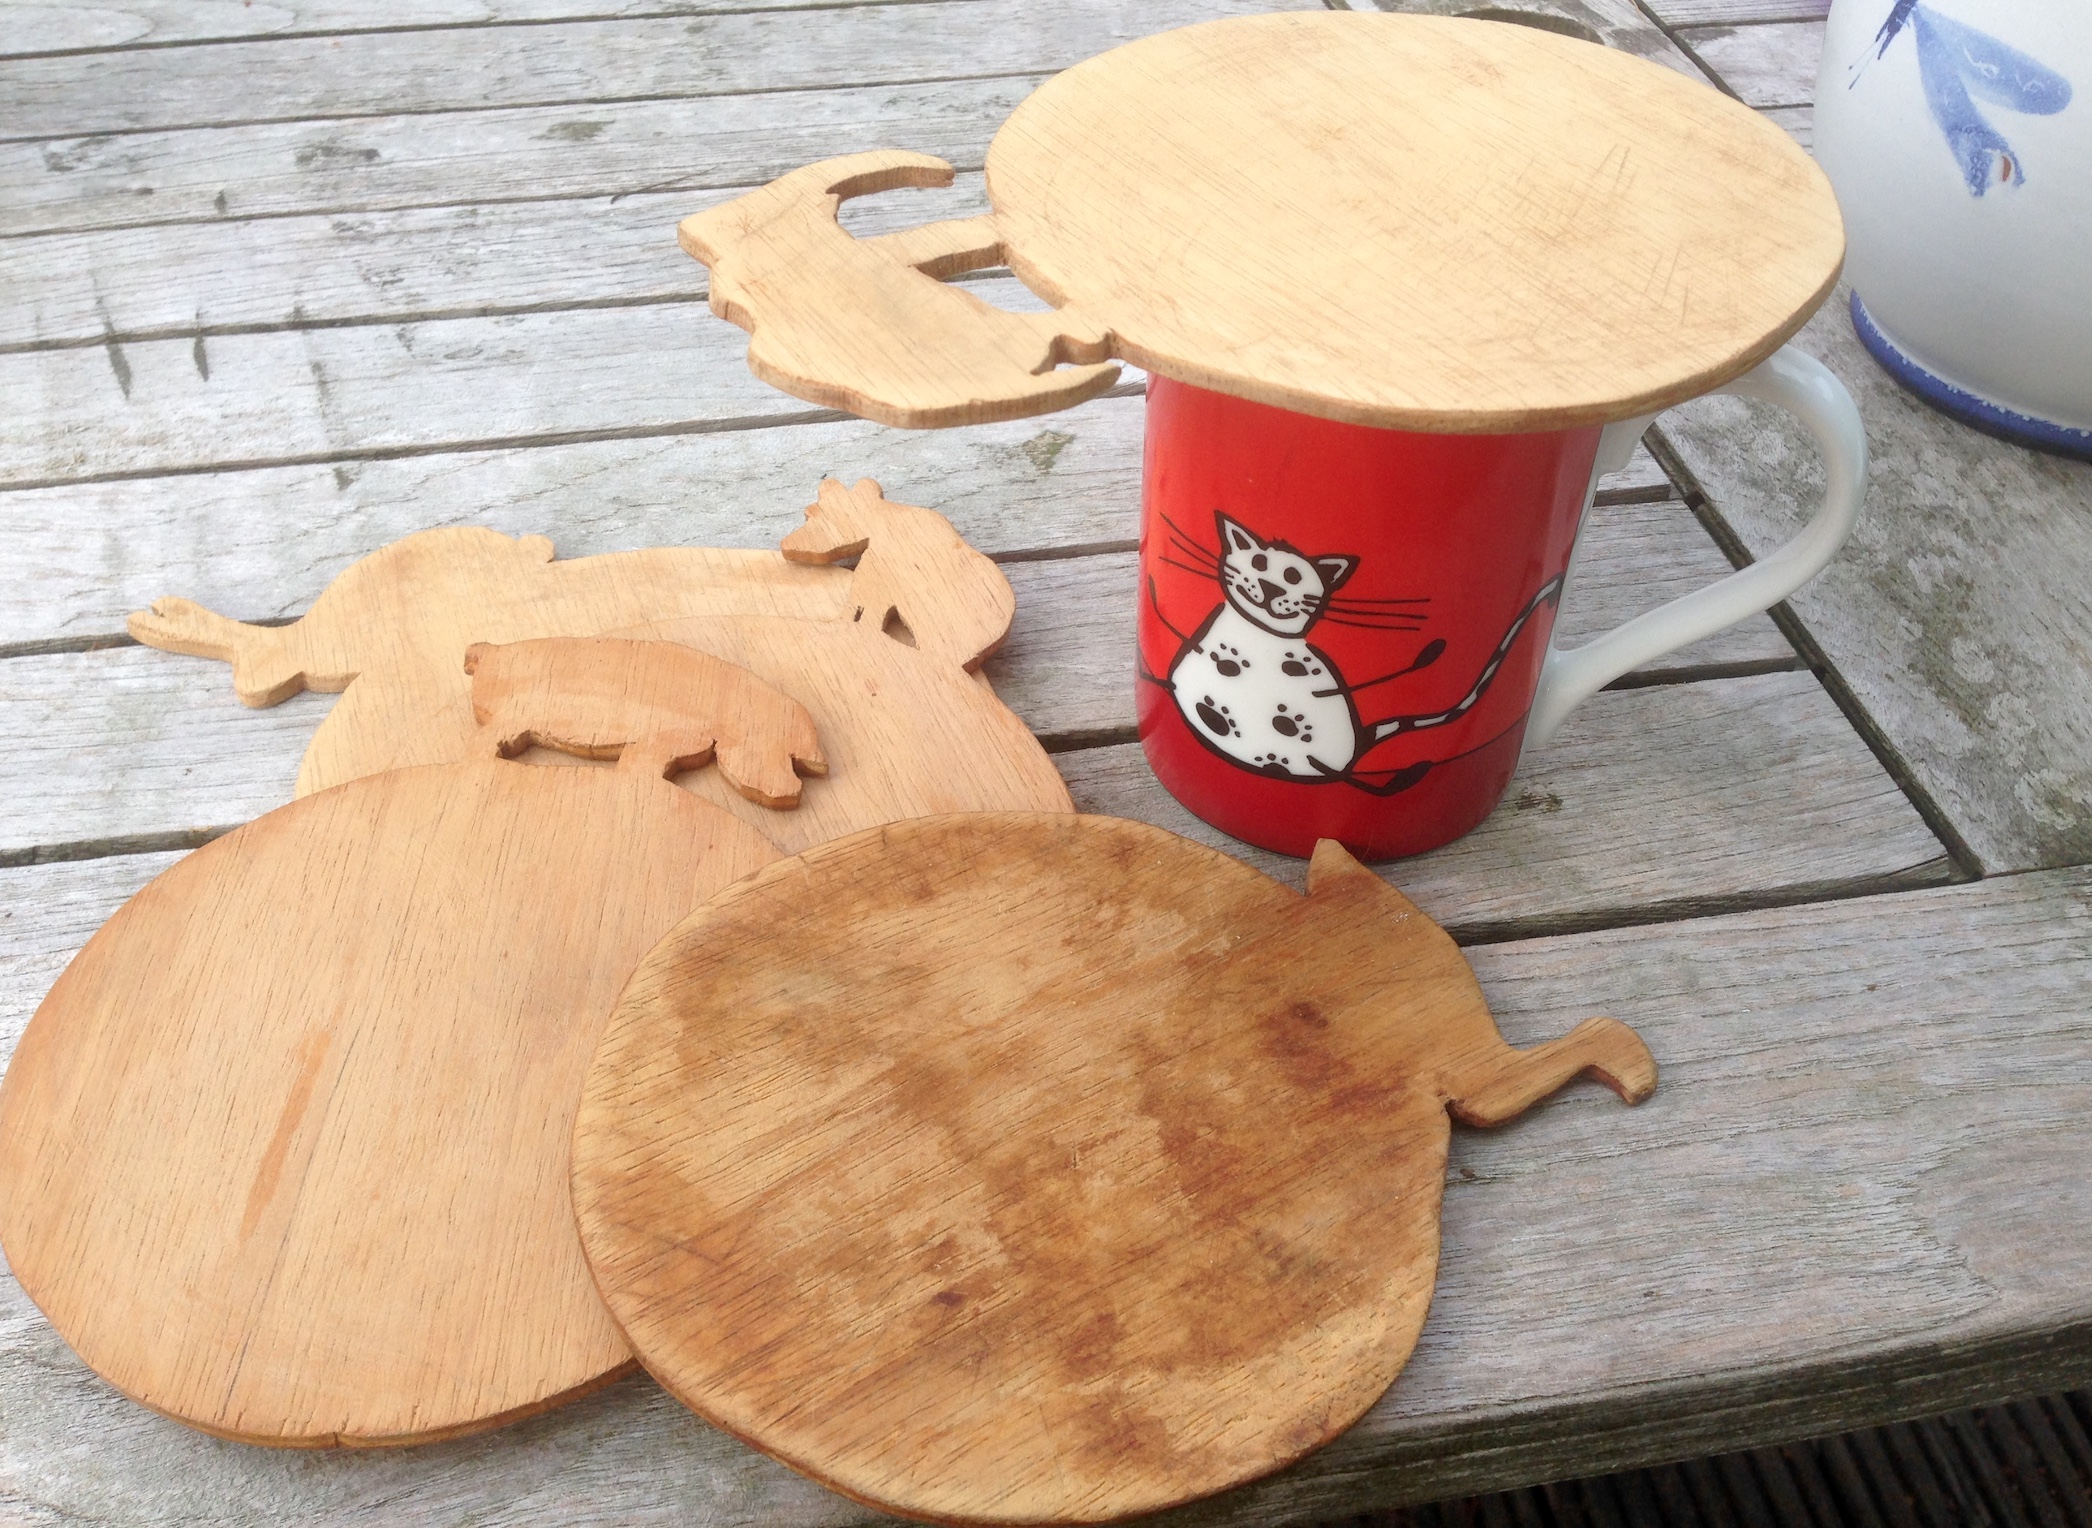 Henkeltasse mit Katzenmotiv, bedeckt mit einer runden, flachen Holzscheibe – Laubsägearbeit. Daneben weitere weitere Laubsäge-Scheiben mit ausgesägten Tiermotiven.